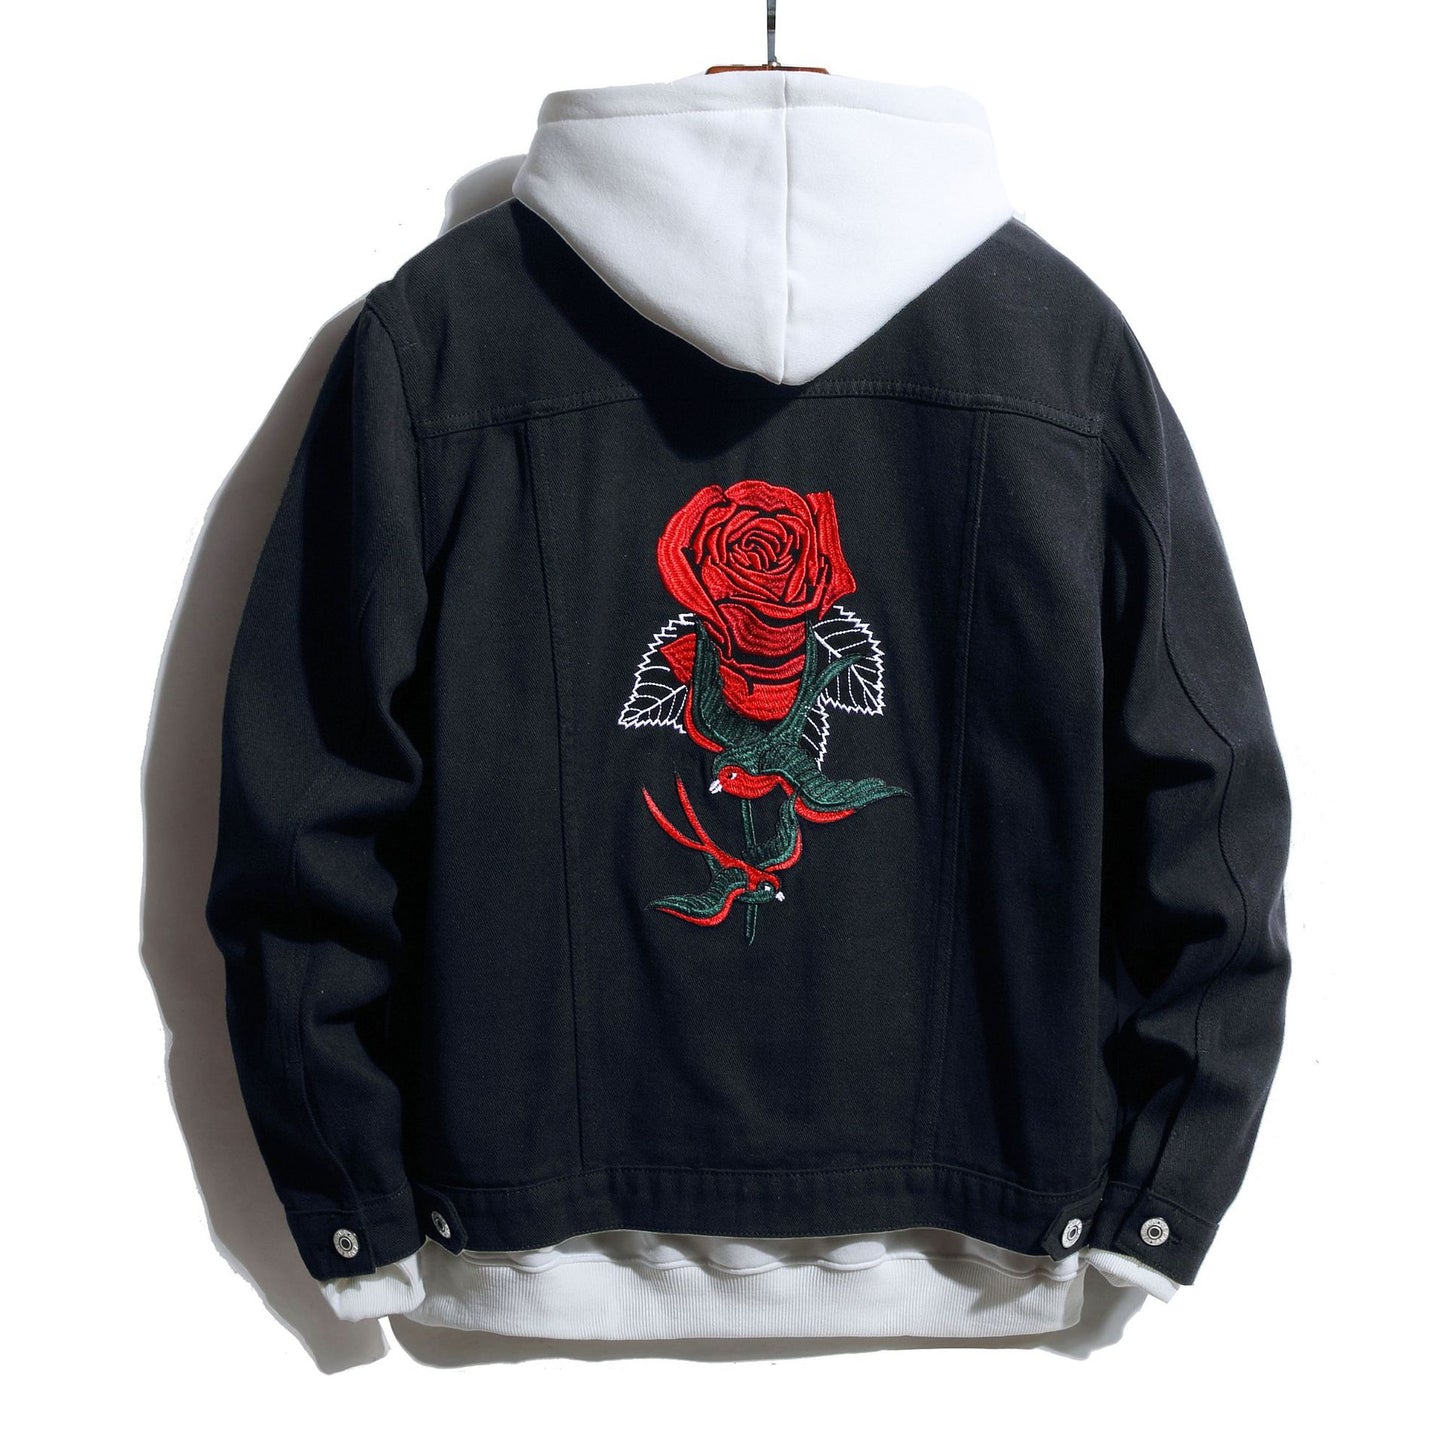 Men's Rose Embroidered Black Jacket backside